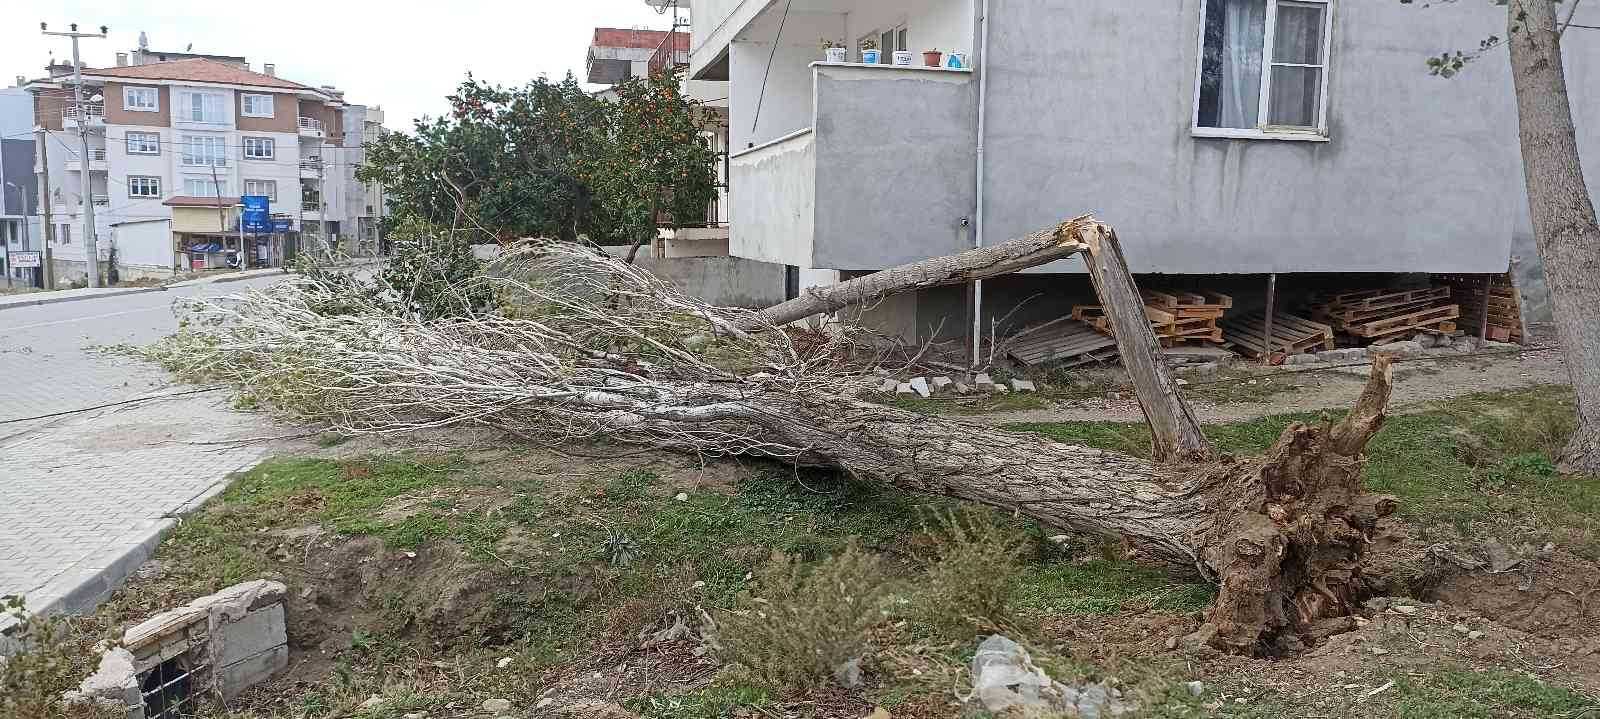 Fırtına ağaçları yıktı #balikesir